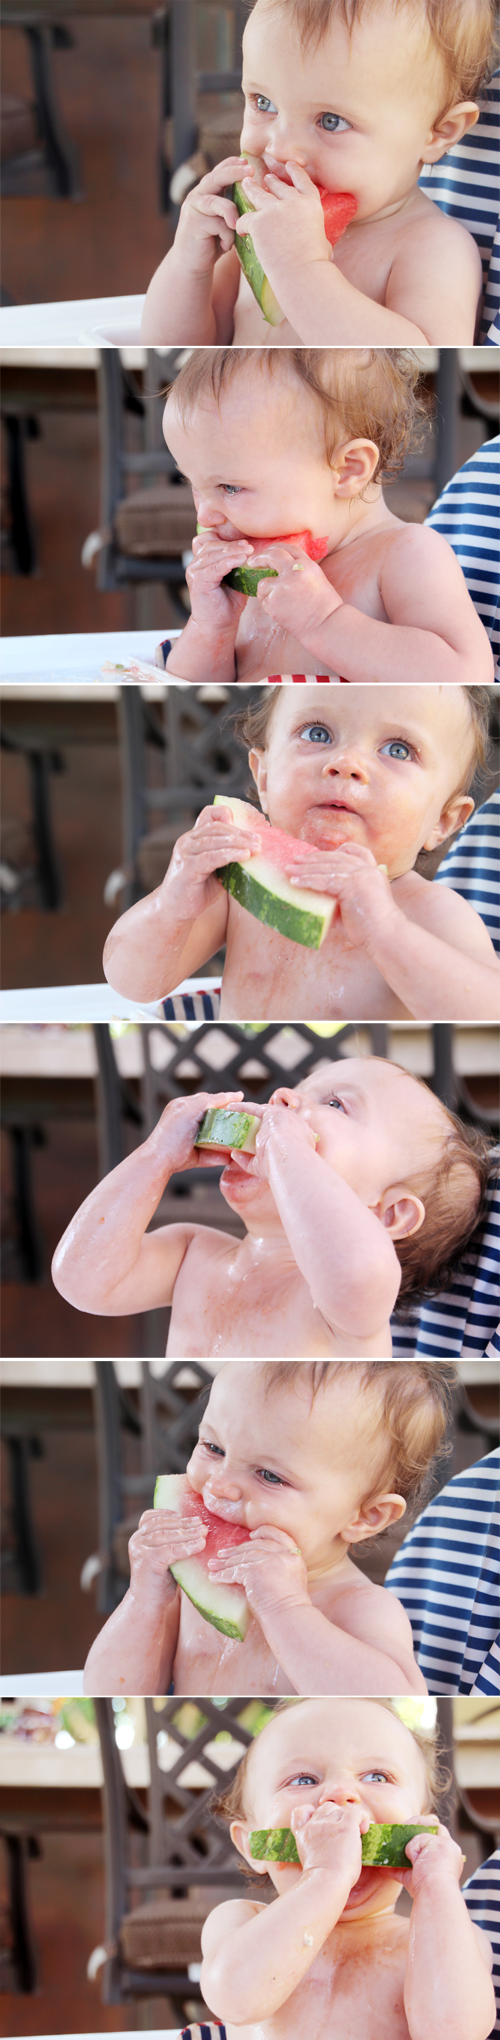 Memorial Day 2014 | How to Enjoy Watermelon | PepperDesignBlog.com